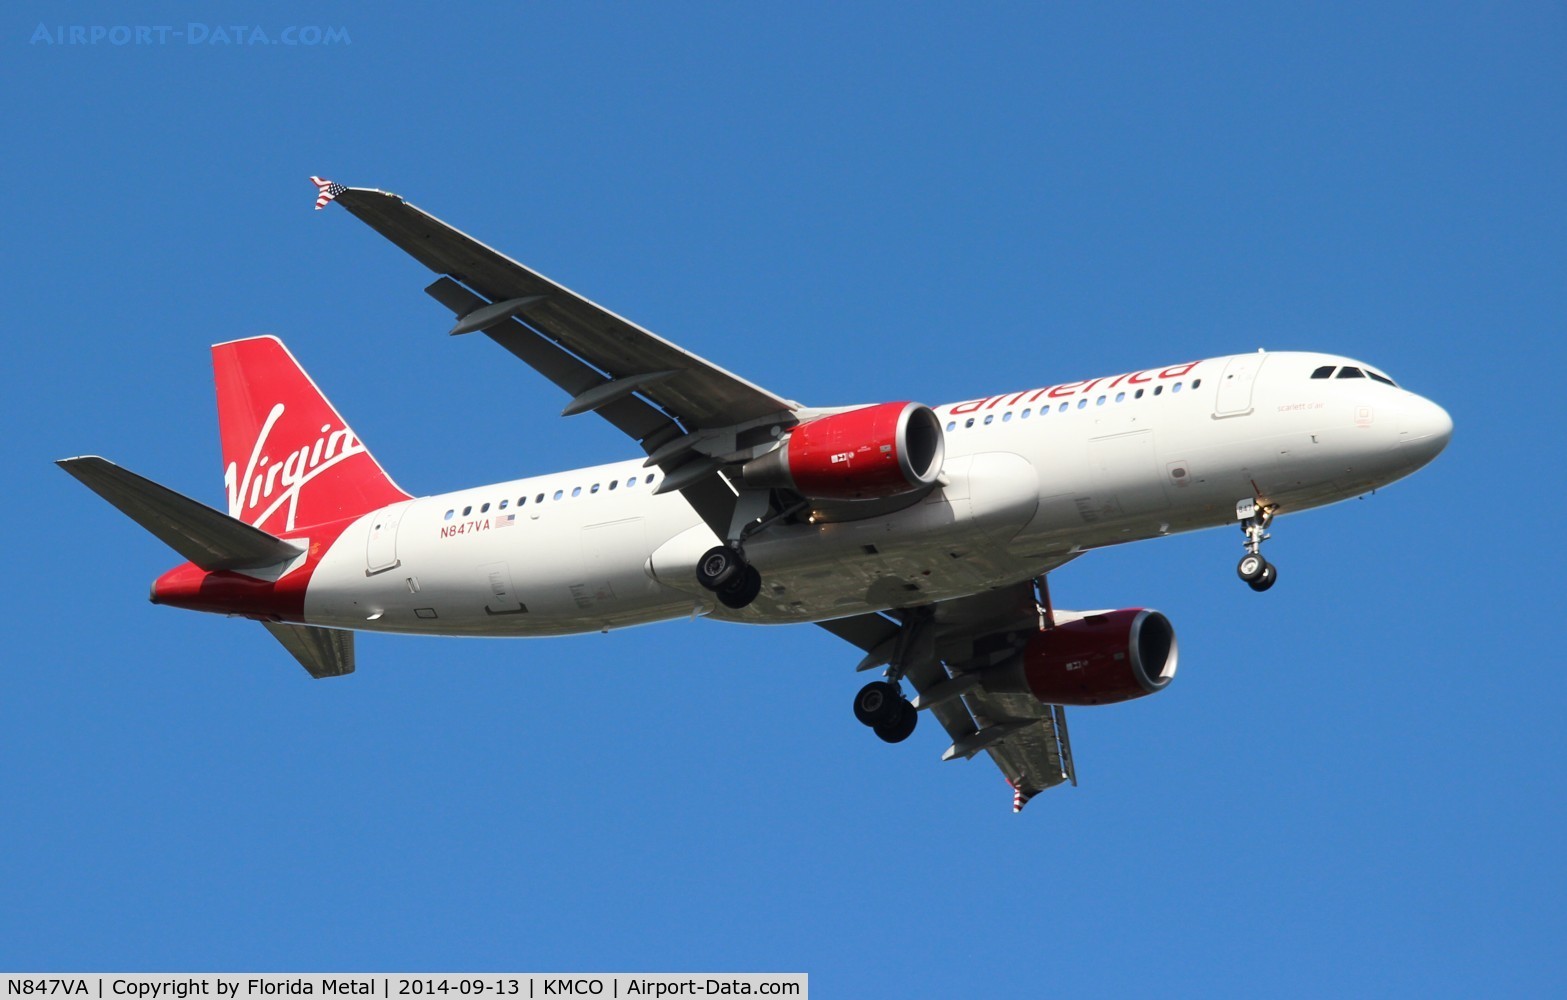 N847VA, 2011 Airbus A320-214 C/N 4948, Virgin America